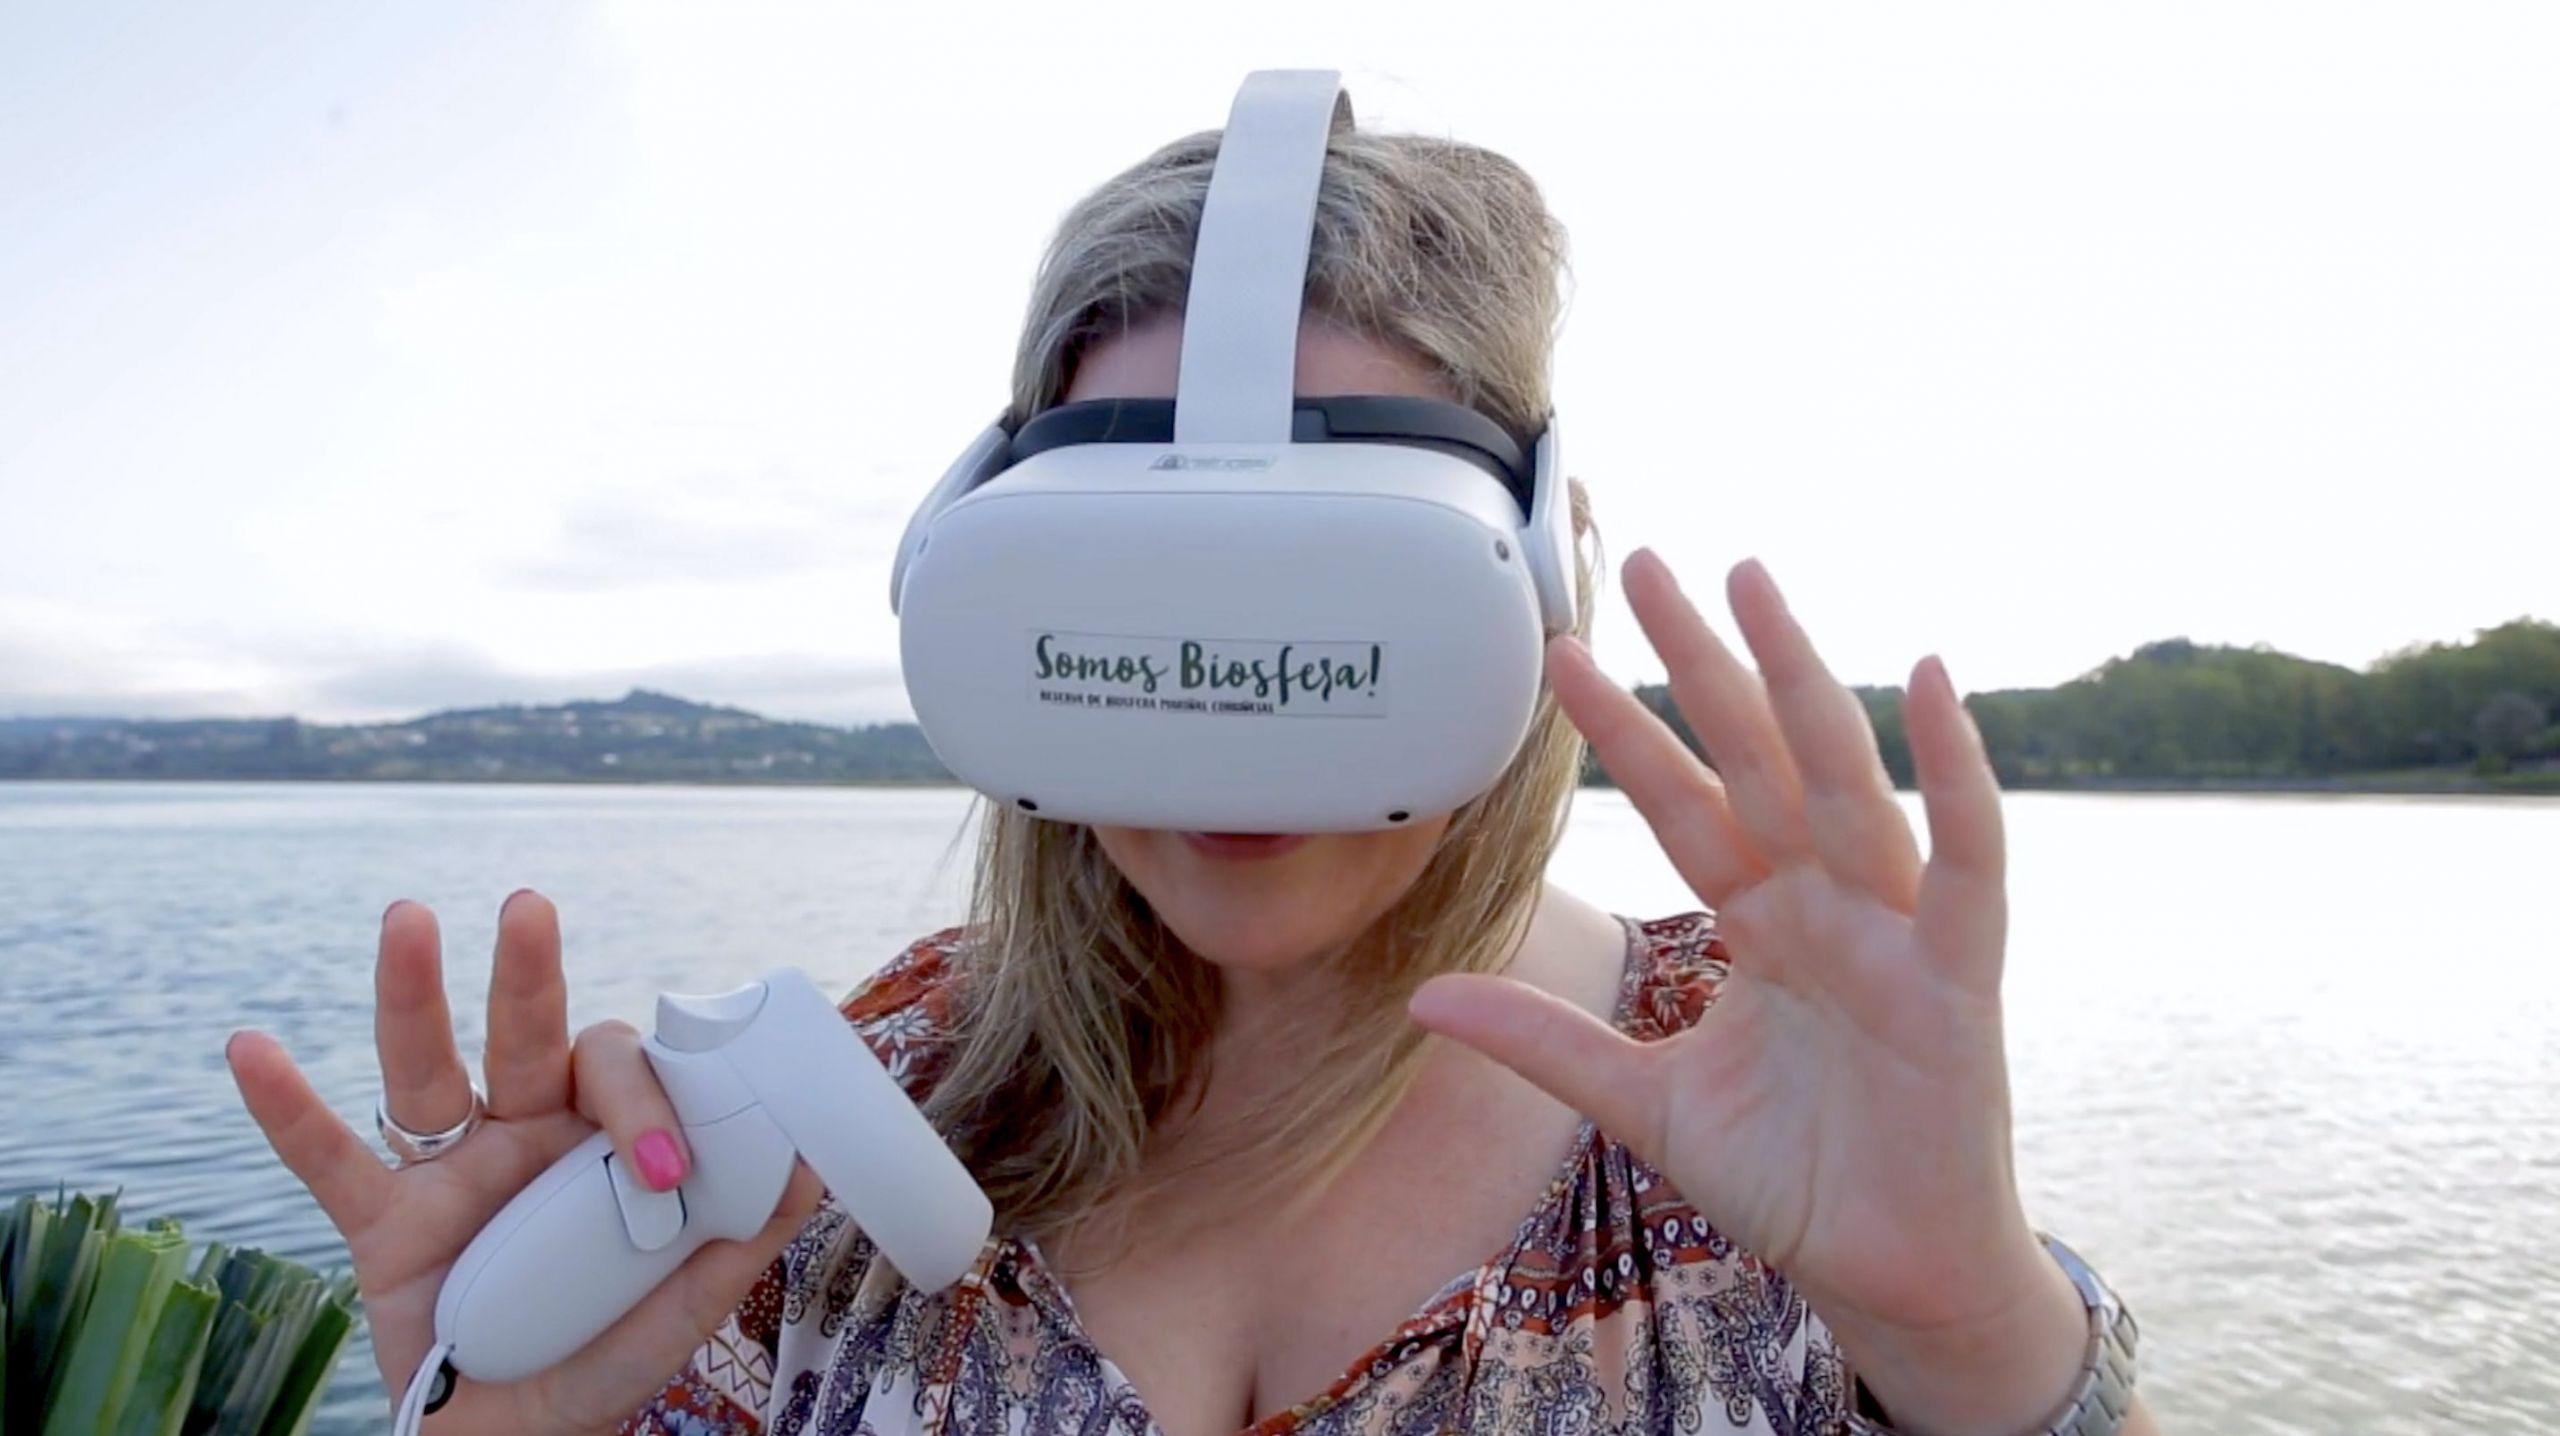 Experiencia inmersiva con gafas de realidad virtual. Foto: Reserva da Biosfera